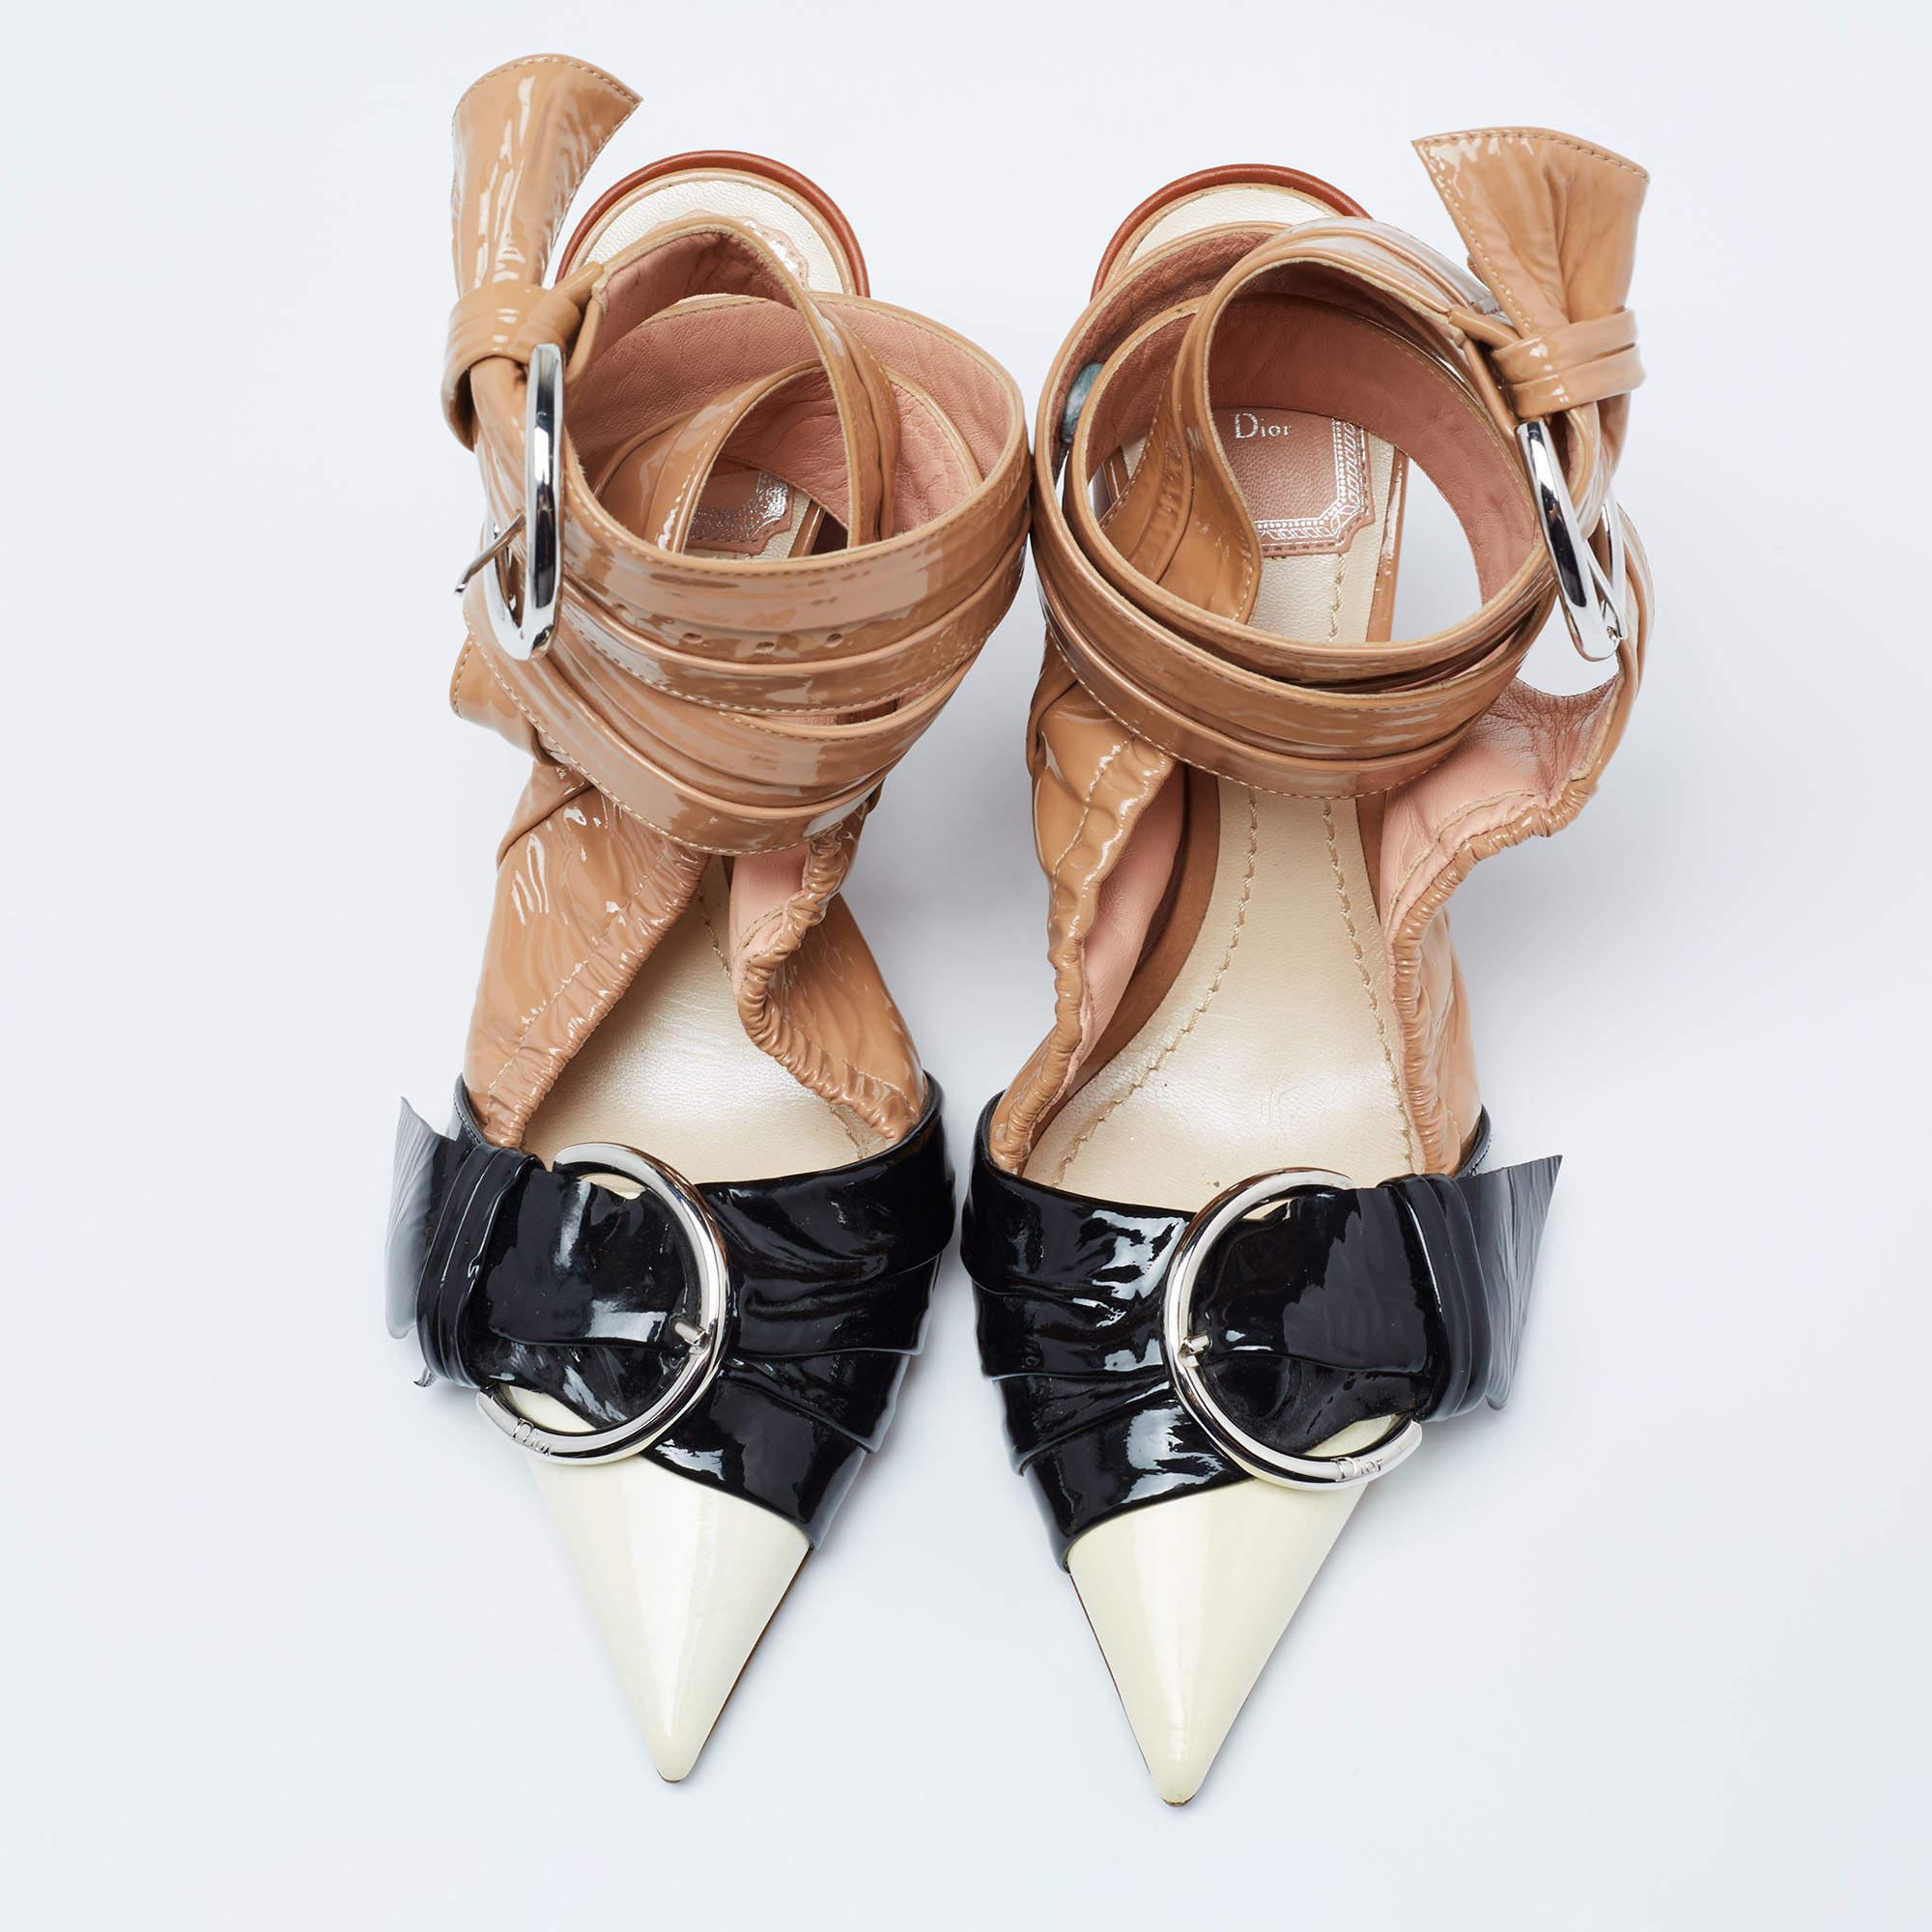 Diese Sandalen von Dior sind mit ihren avantgardistischen Details absolut umwerfend. Sie sind aus glänzendem Lackleder gefertigt und zeigen sich in mehrfarbigen Tönen, die einen mühelosen Stil ausstrahlen. Sie haben spitze Zehen, Schnallendetails